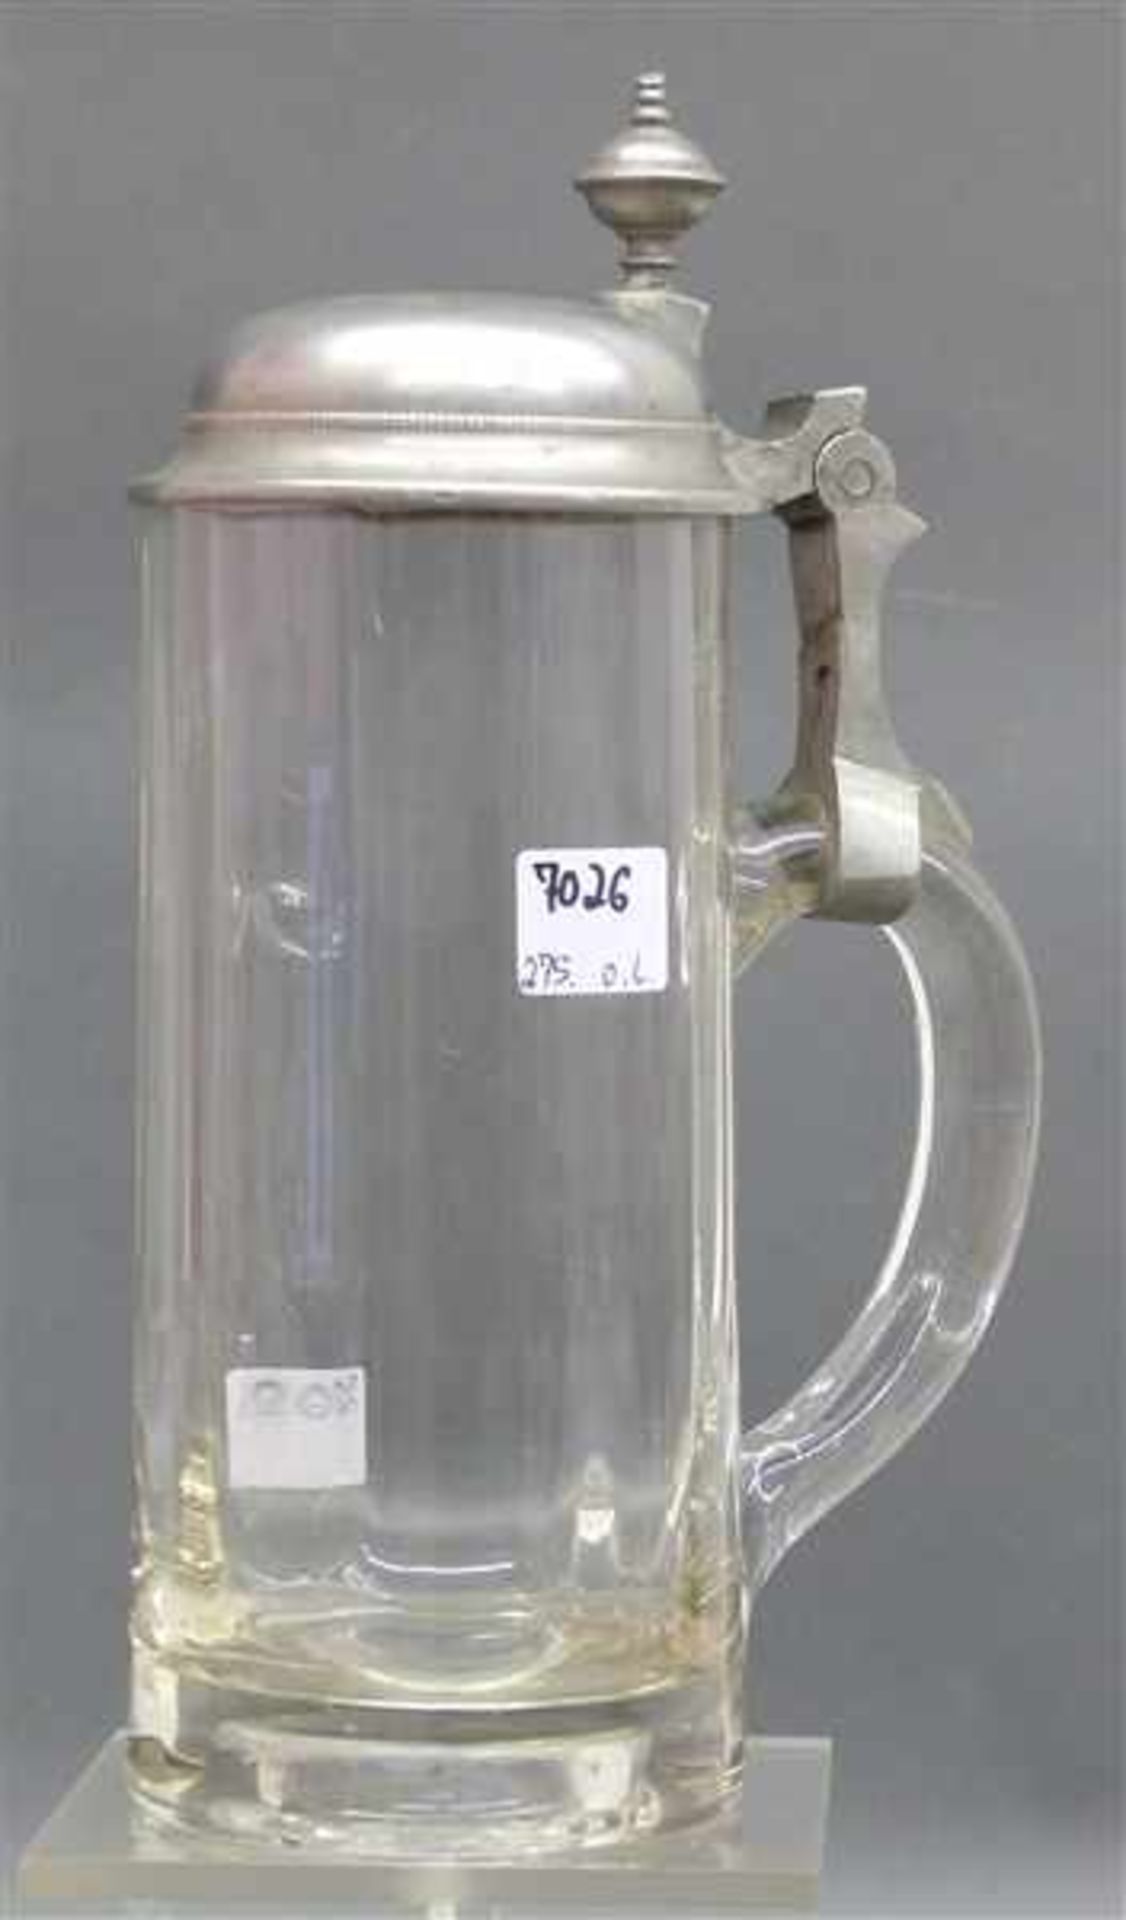 Bierkrug um 1900, farbloses Glas, mit Zinndeckel, 1/2 ltr., h 22,5 cm,